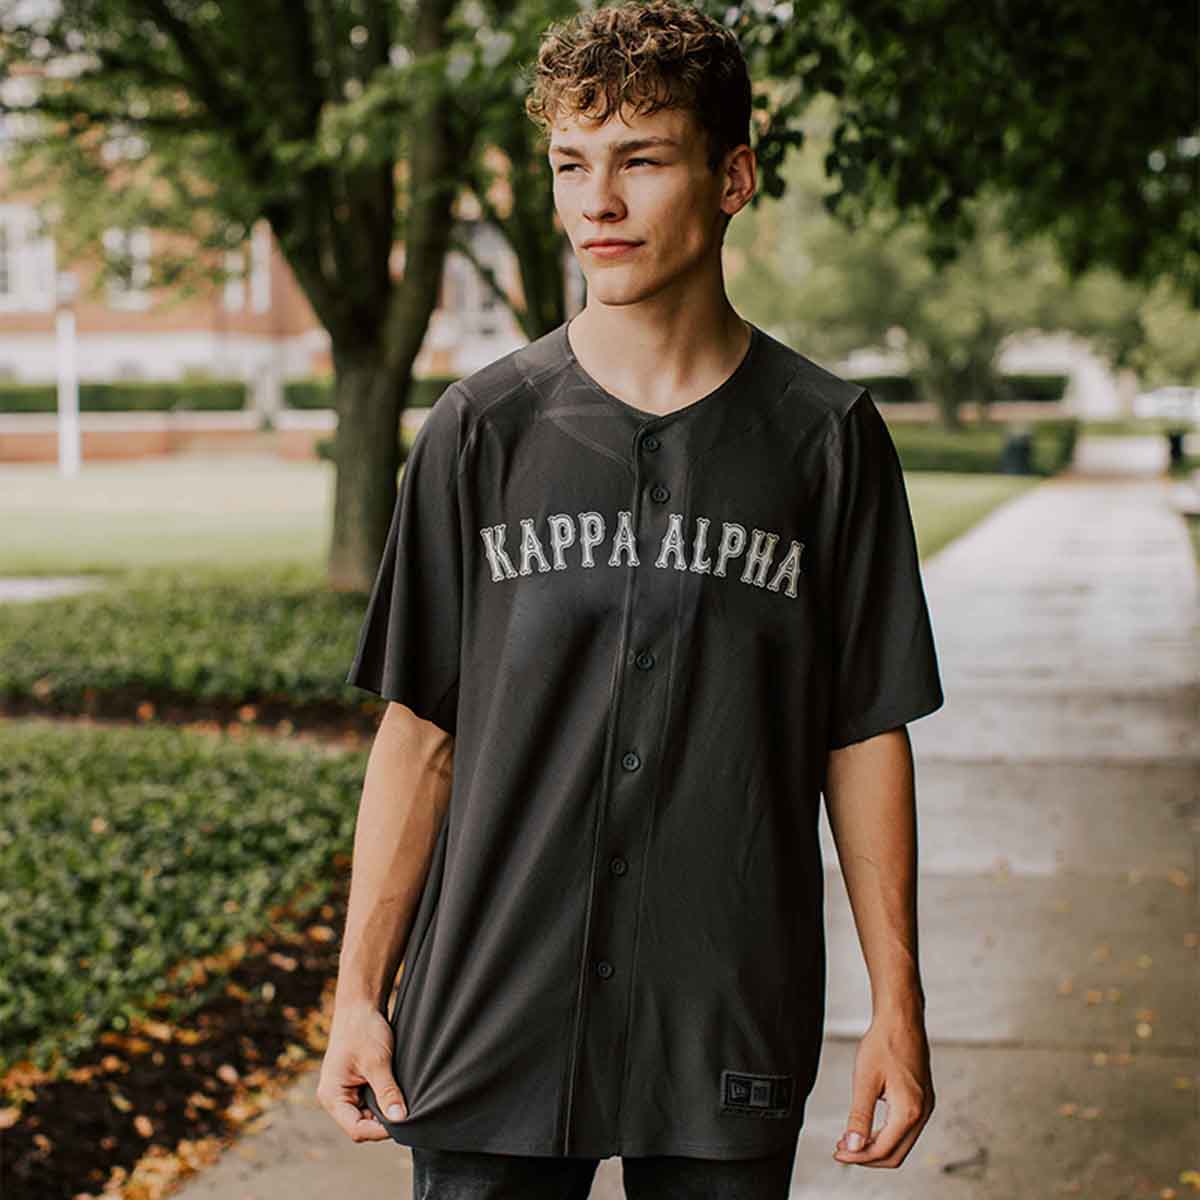 Kappa Alpha Personalized New Era Graphite Baseball Jersey